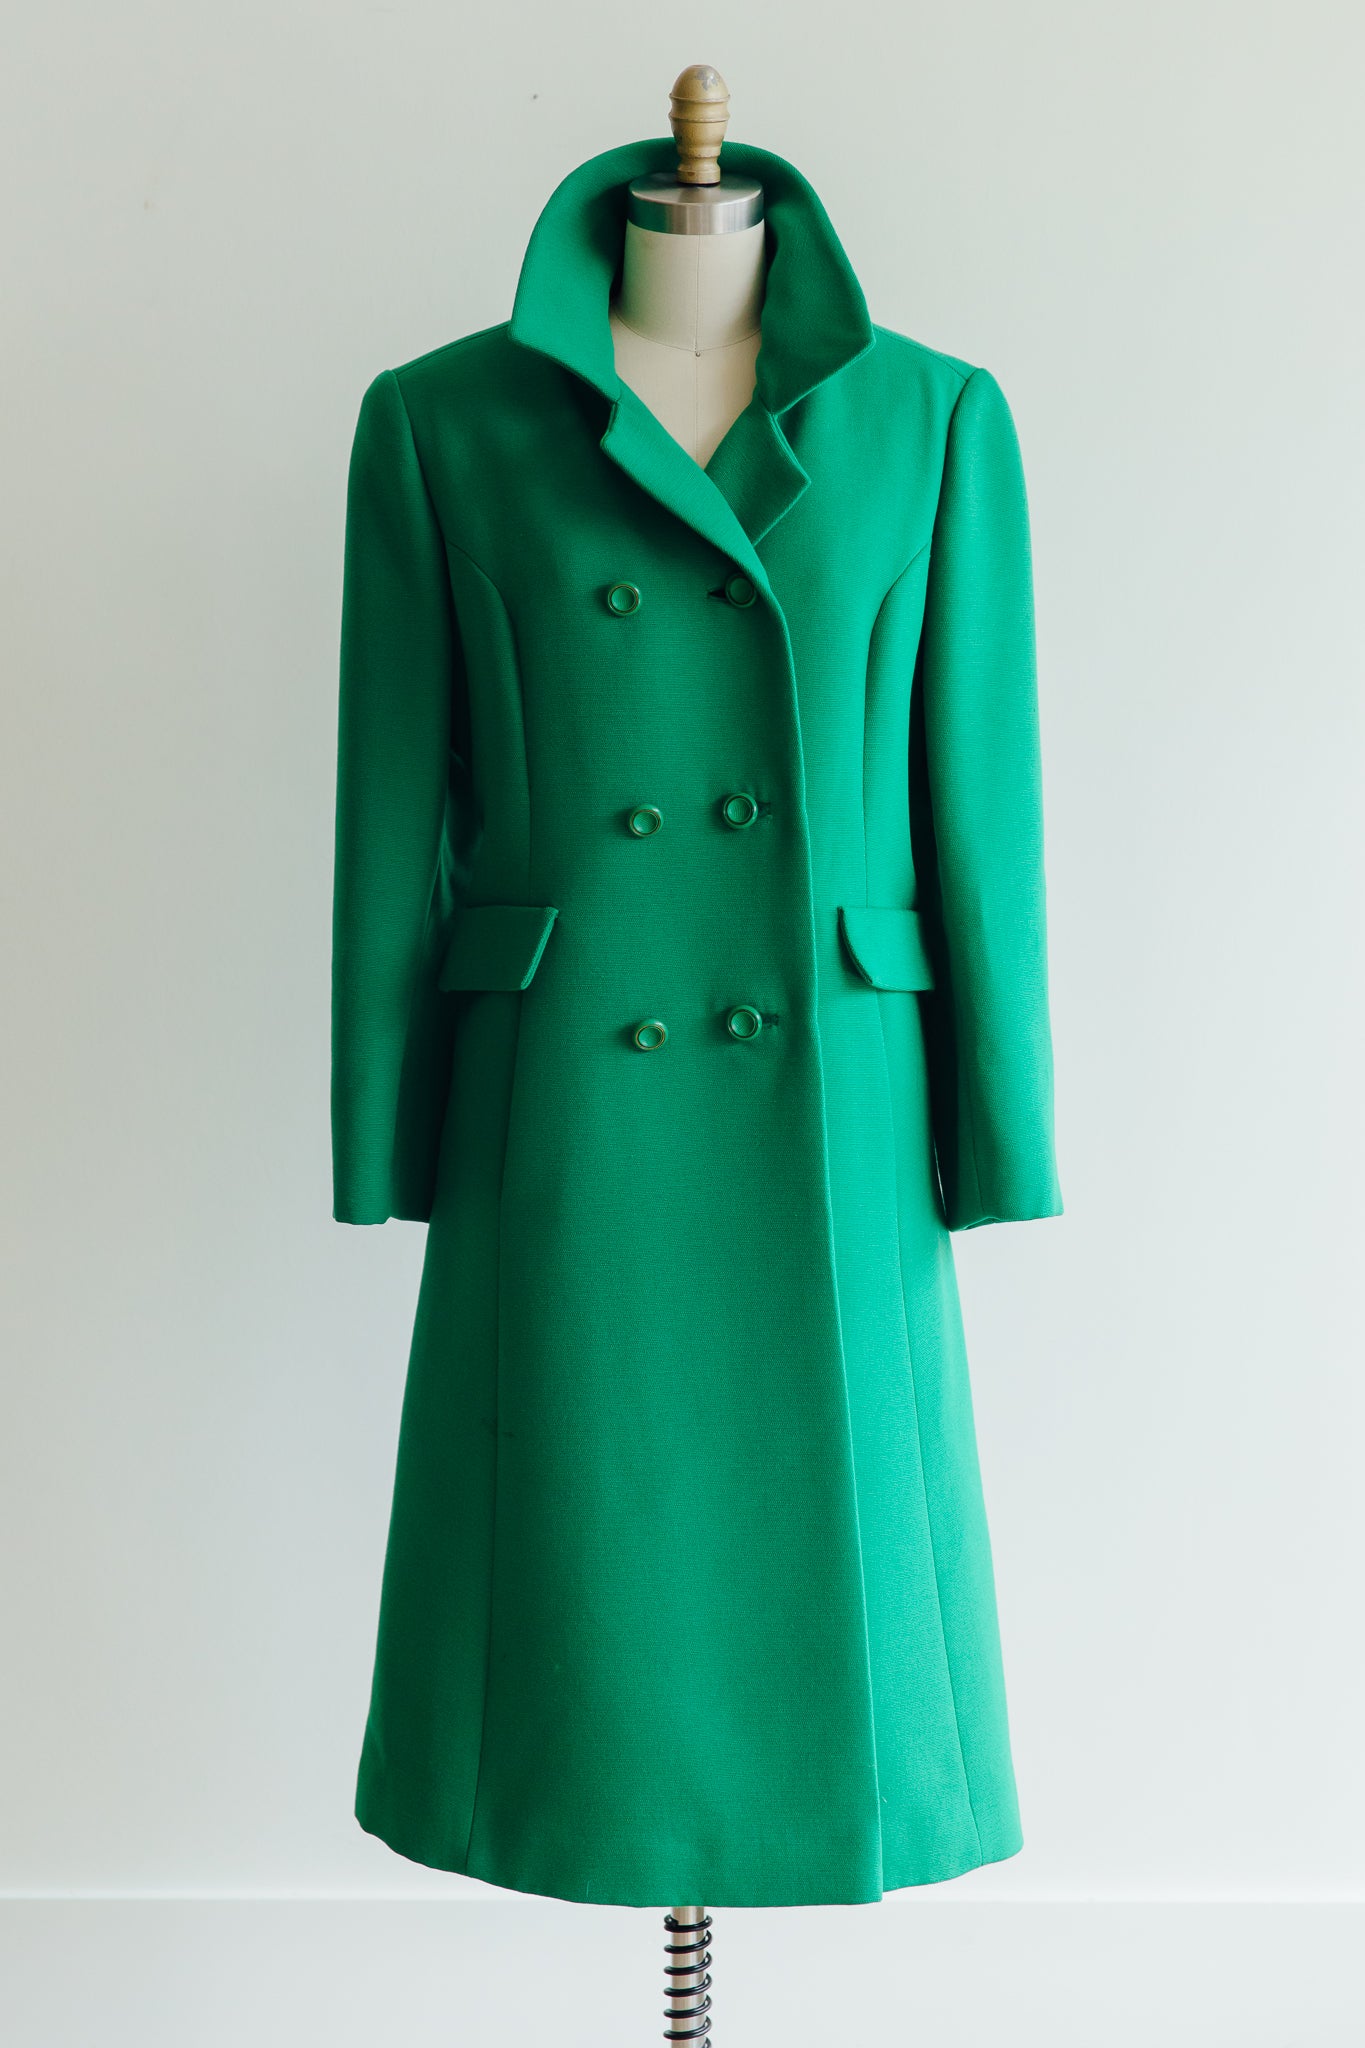 Kessler's Portrait Room Fashion Green Coat